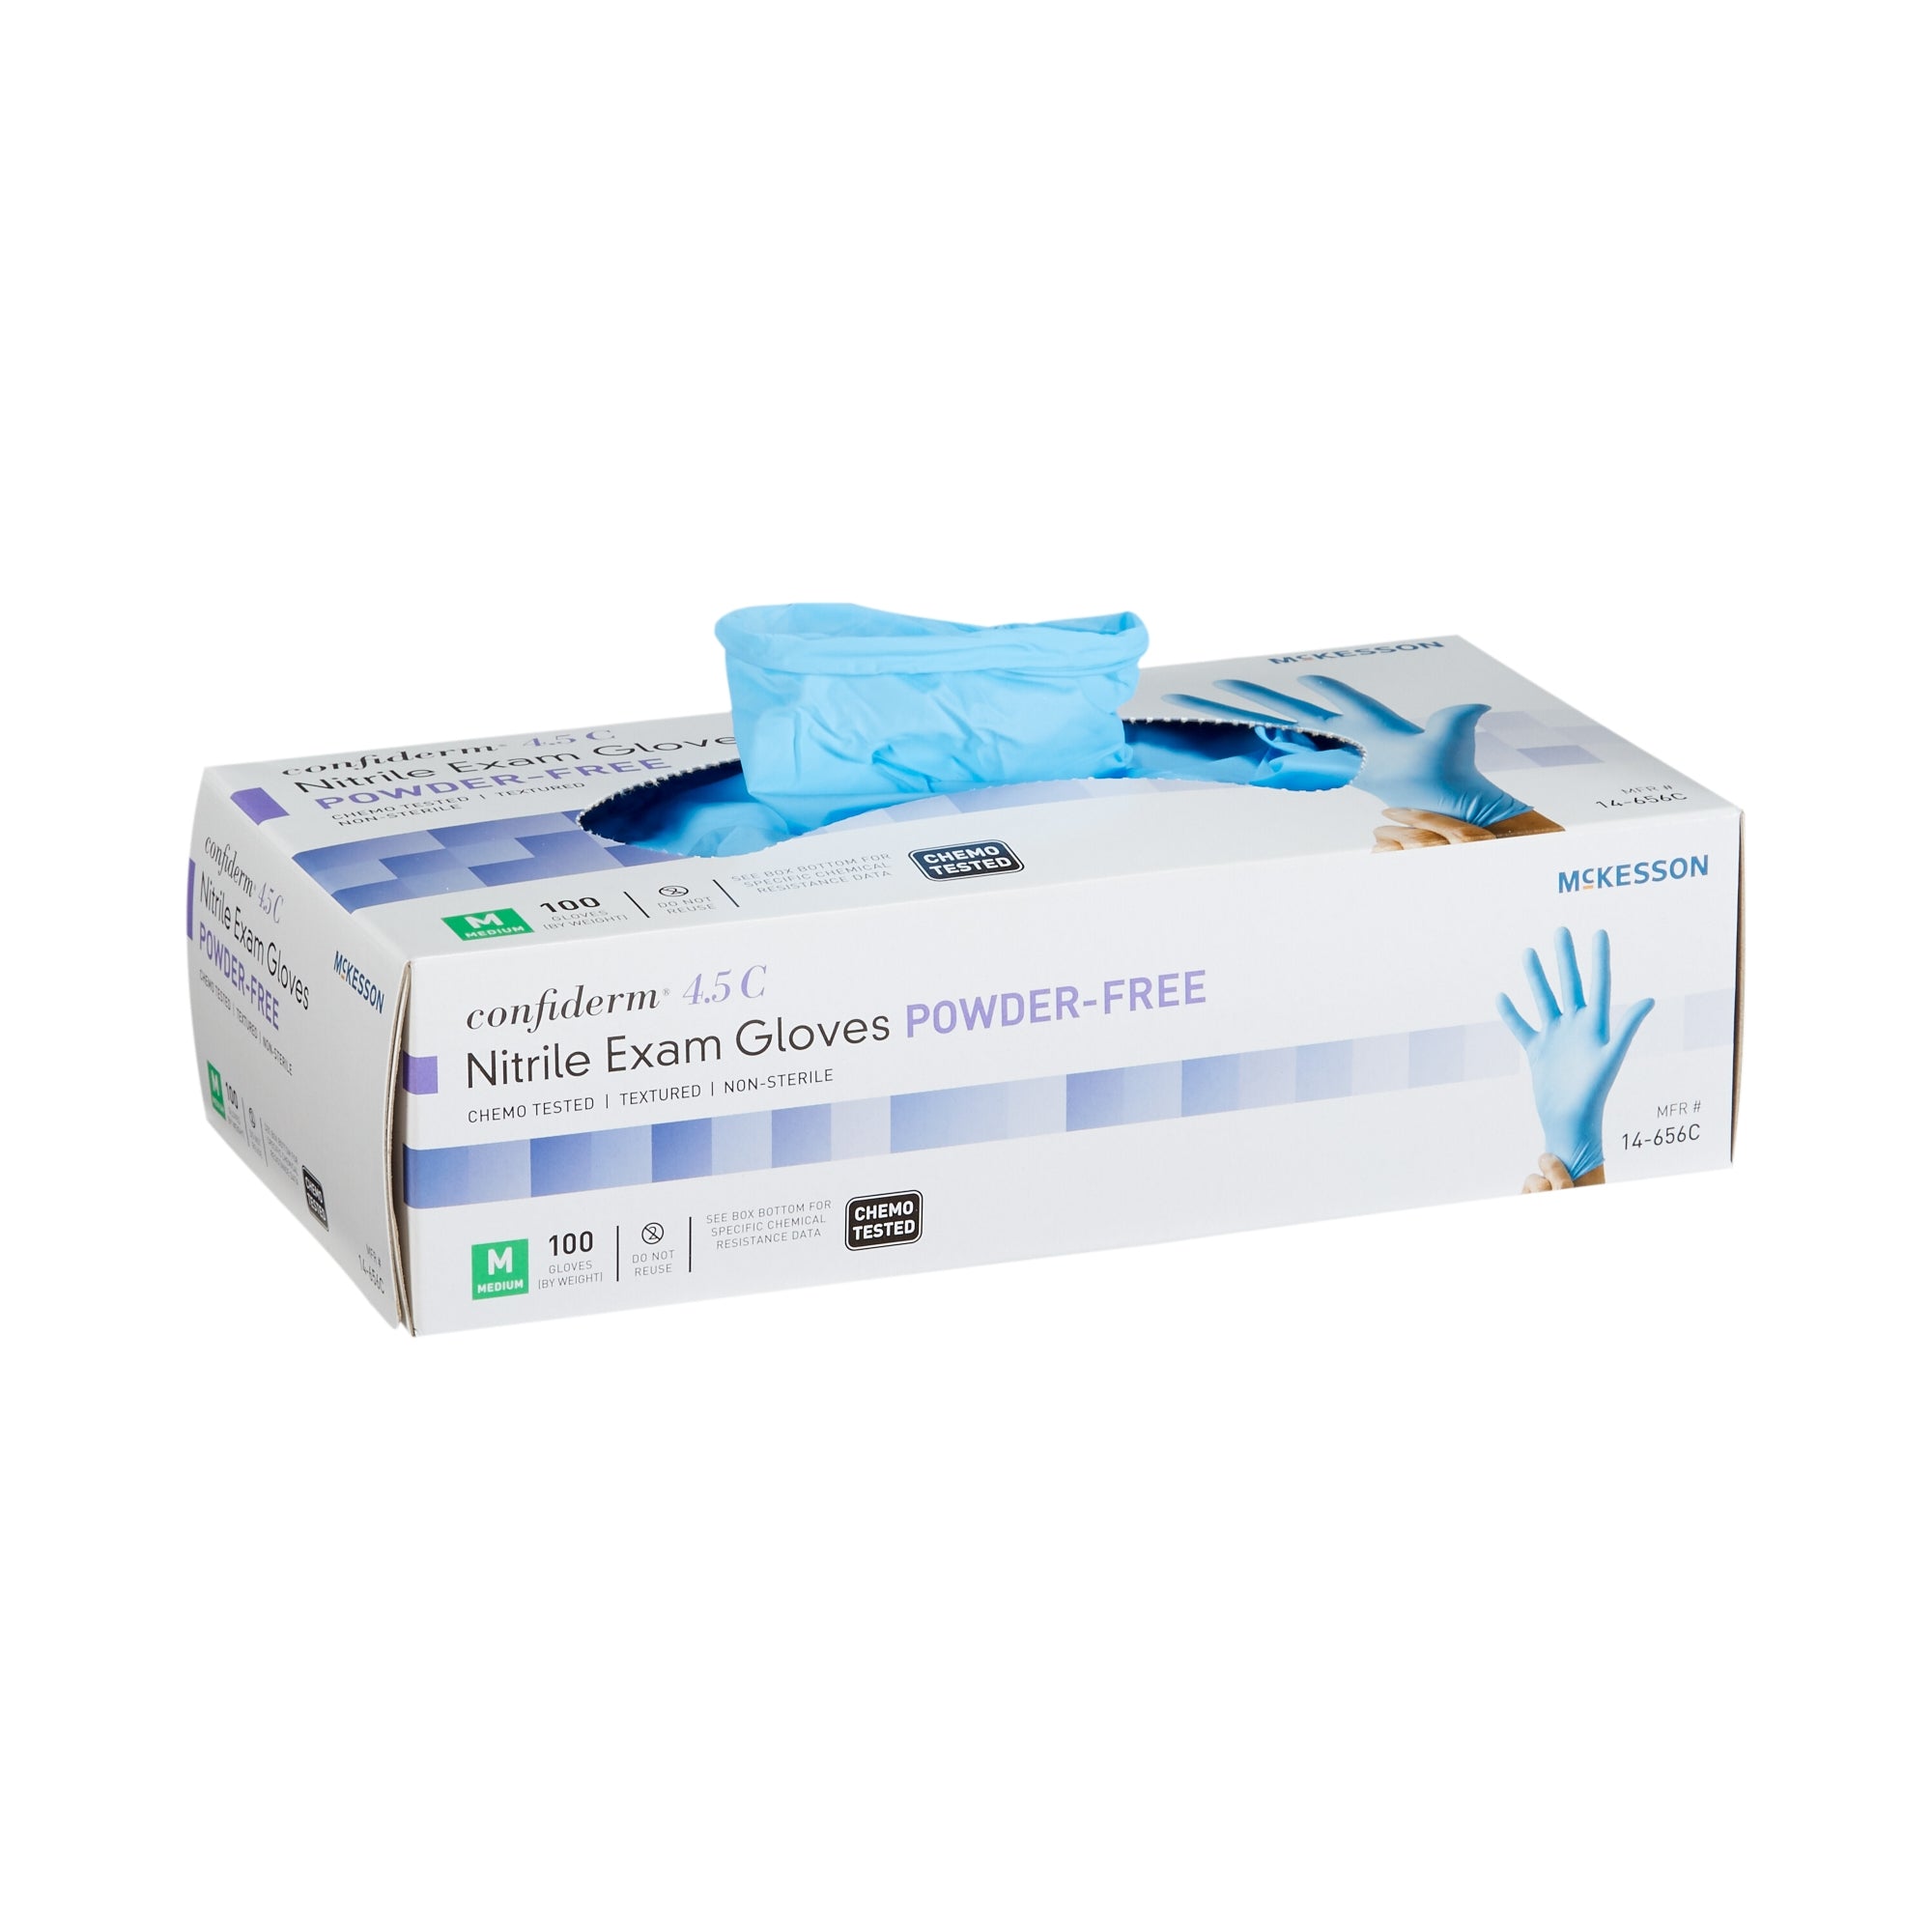 McKesson Confiderm 4.5C Nitrile Exam Gloves, Medium, Blue - 100 Pack